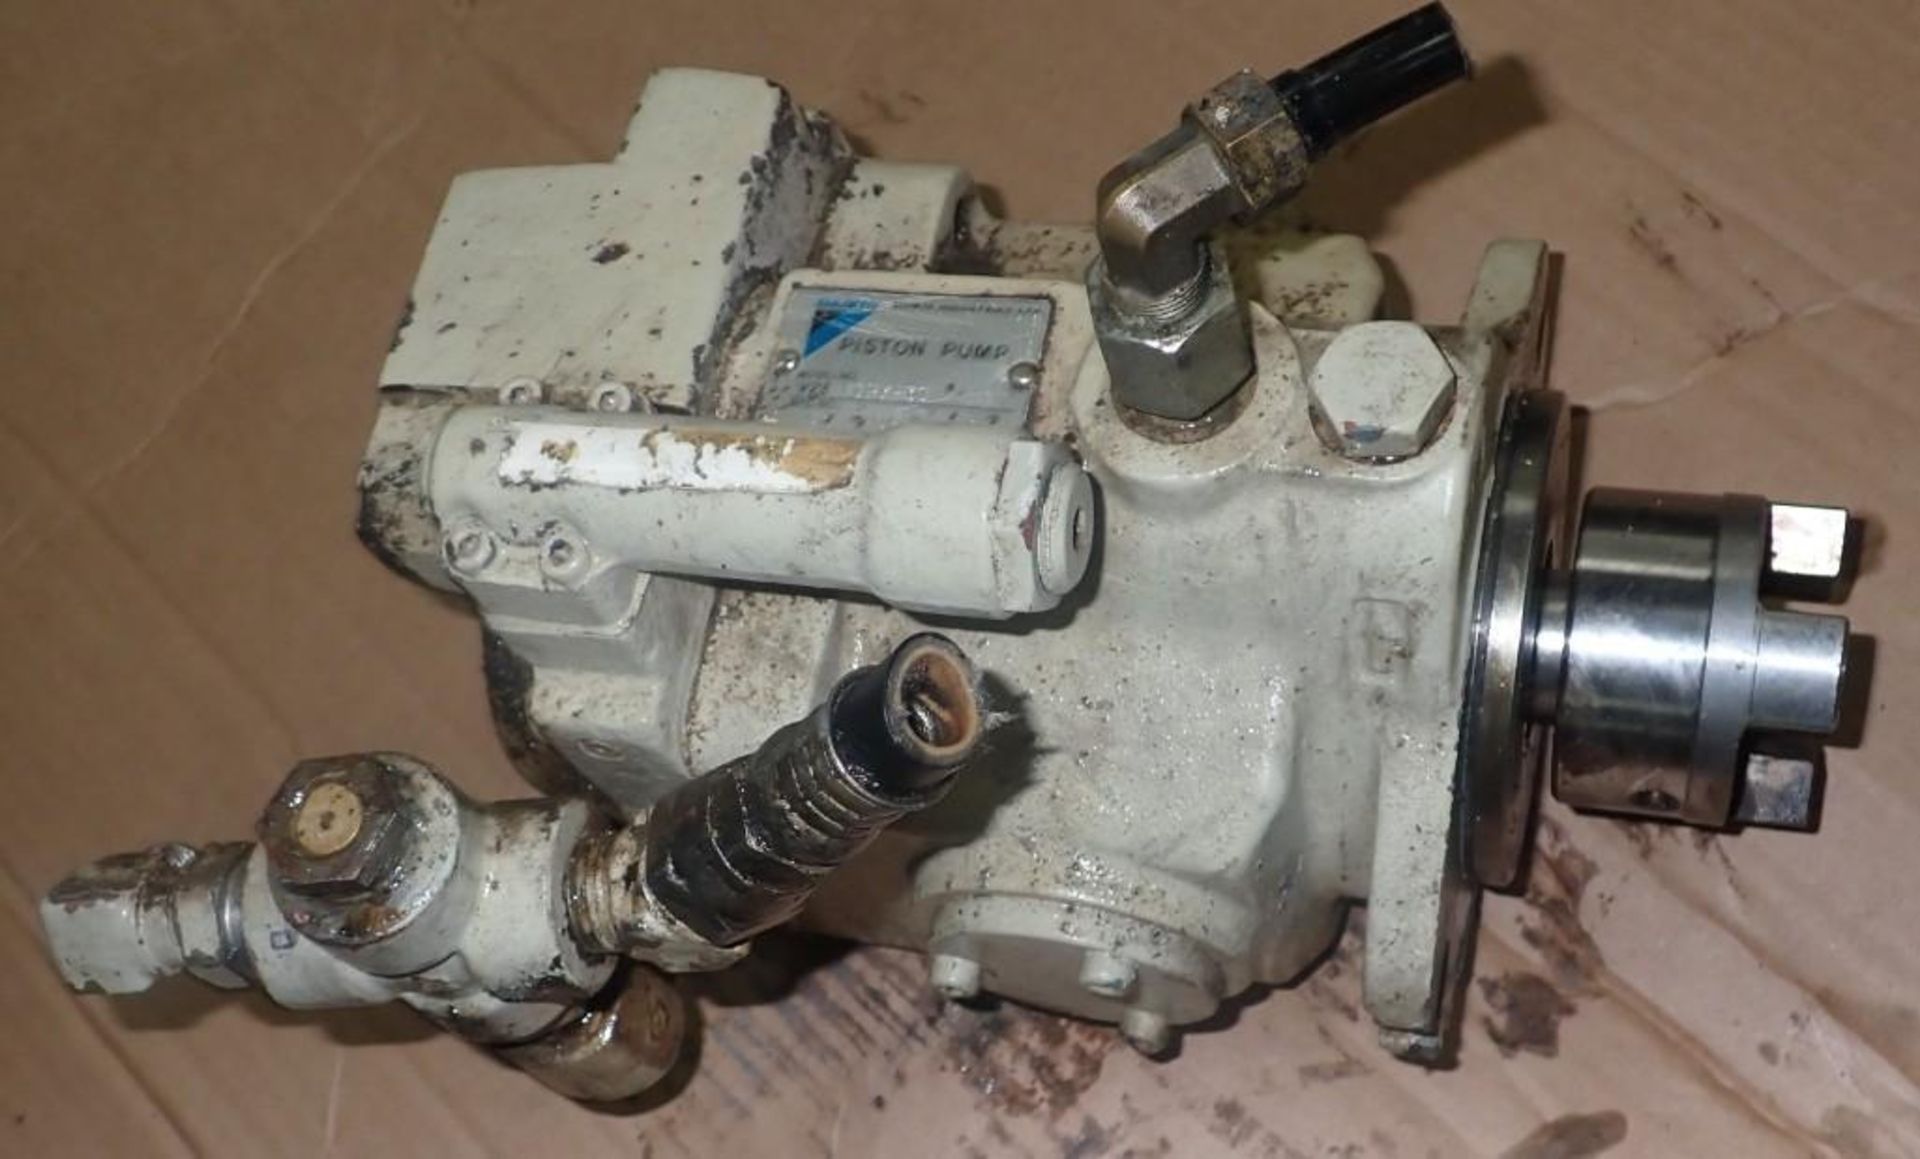 Daikin # V23 A1RX-30 Hydraulic Piston Pump - Image 2 of 3